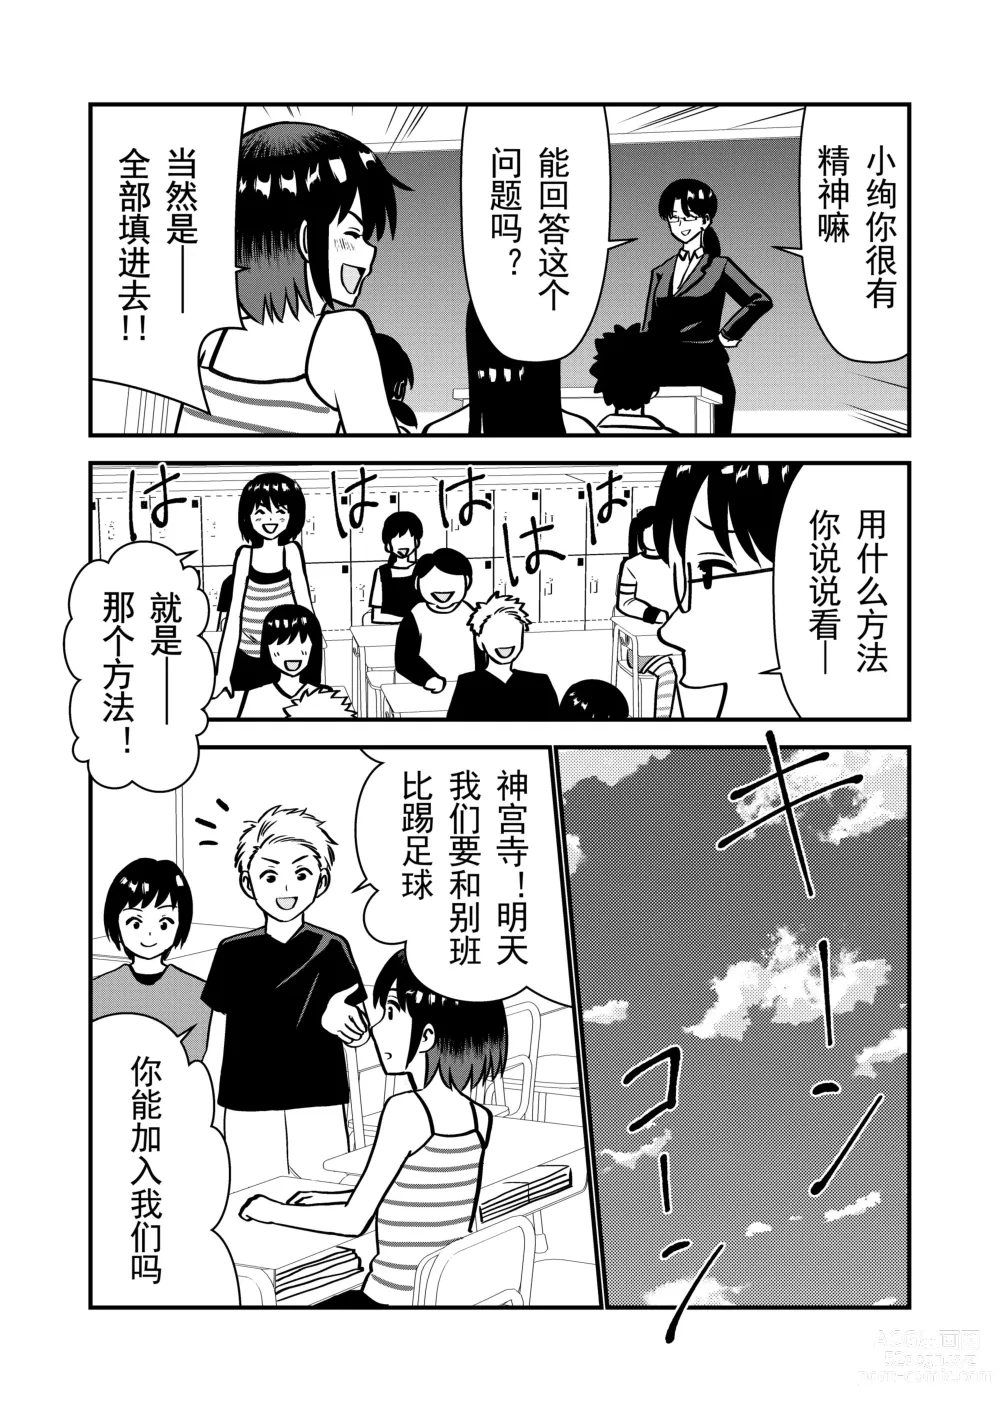 Page 5 of doujinshi 被惩罚后的当天,下半身禁止穿衣服的学校